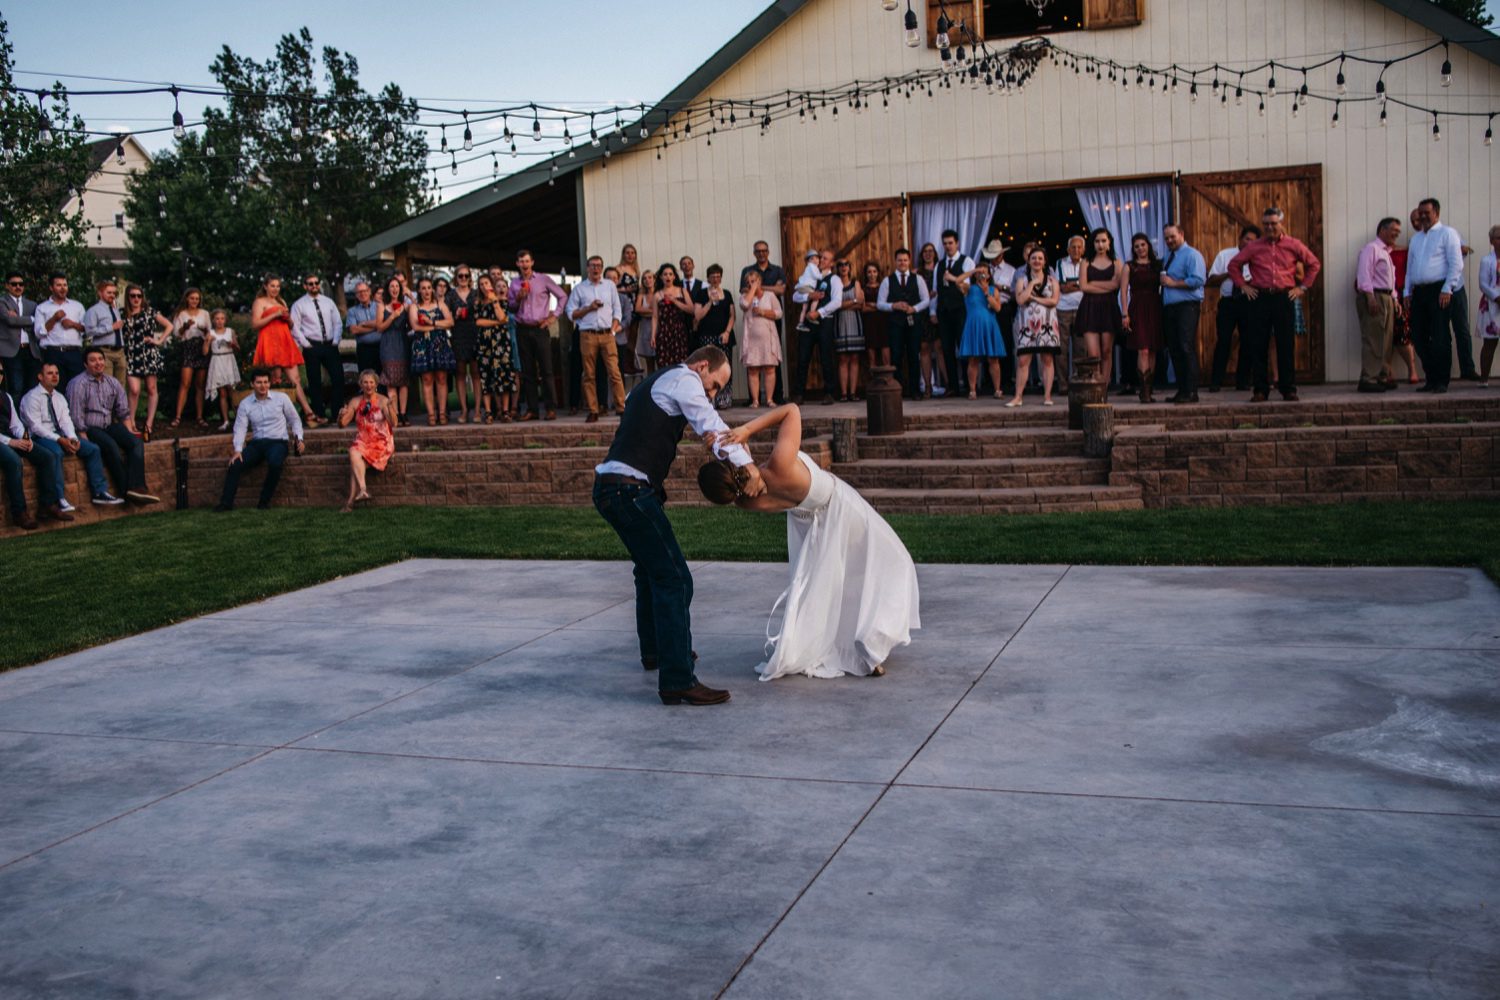 Tex Ranch Peyton Colorado Wedding, Colorado Wedding Photographer, Colorado Springs Wedding Photographer, Rustic Wedding in Colorado, Colorado Wedding ideas, Barn Wedding in Colorado